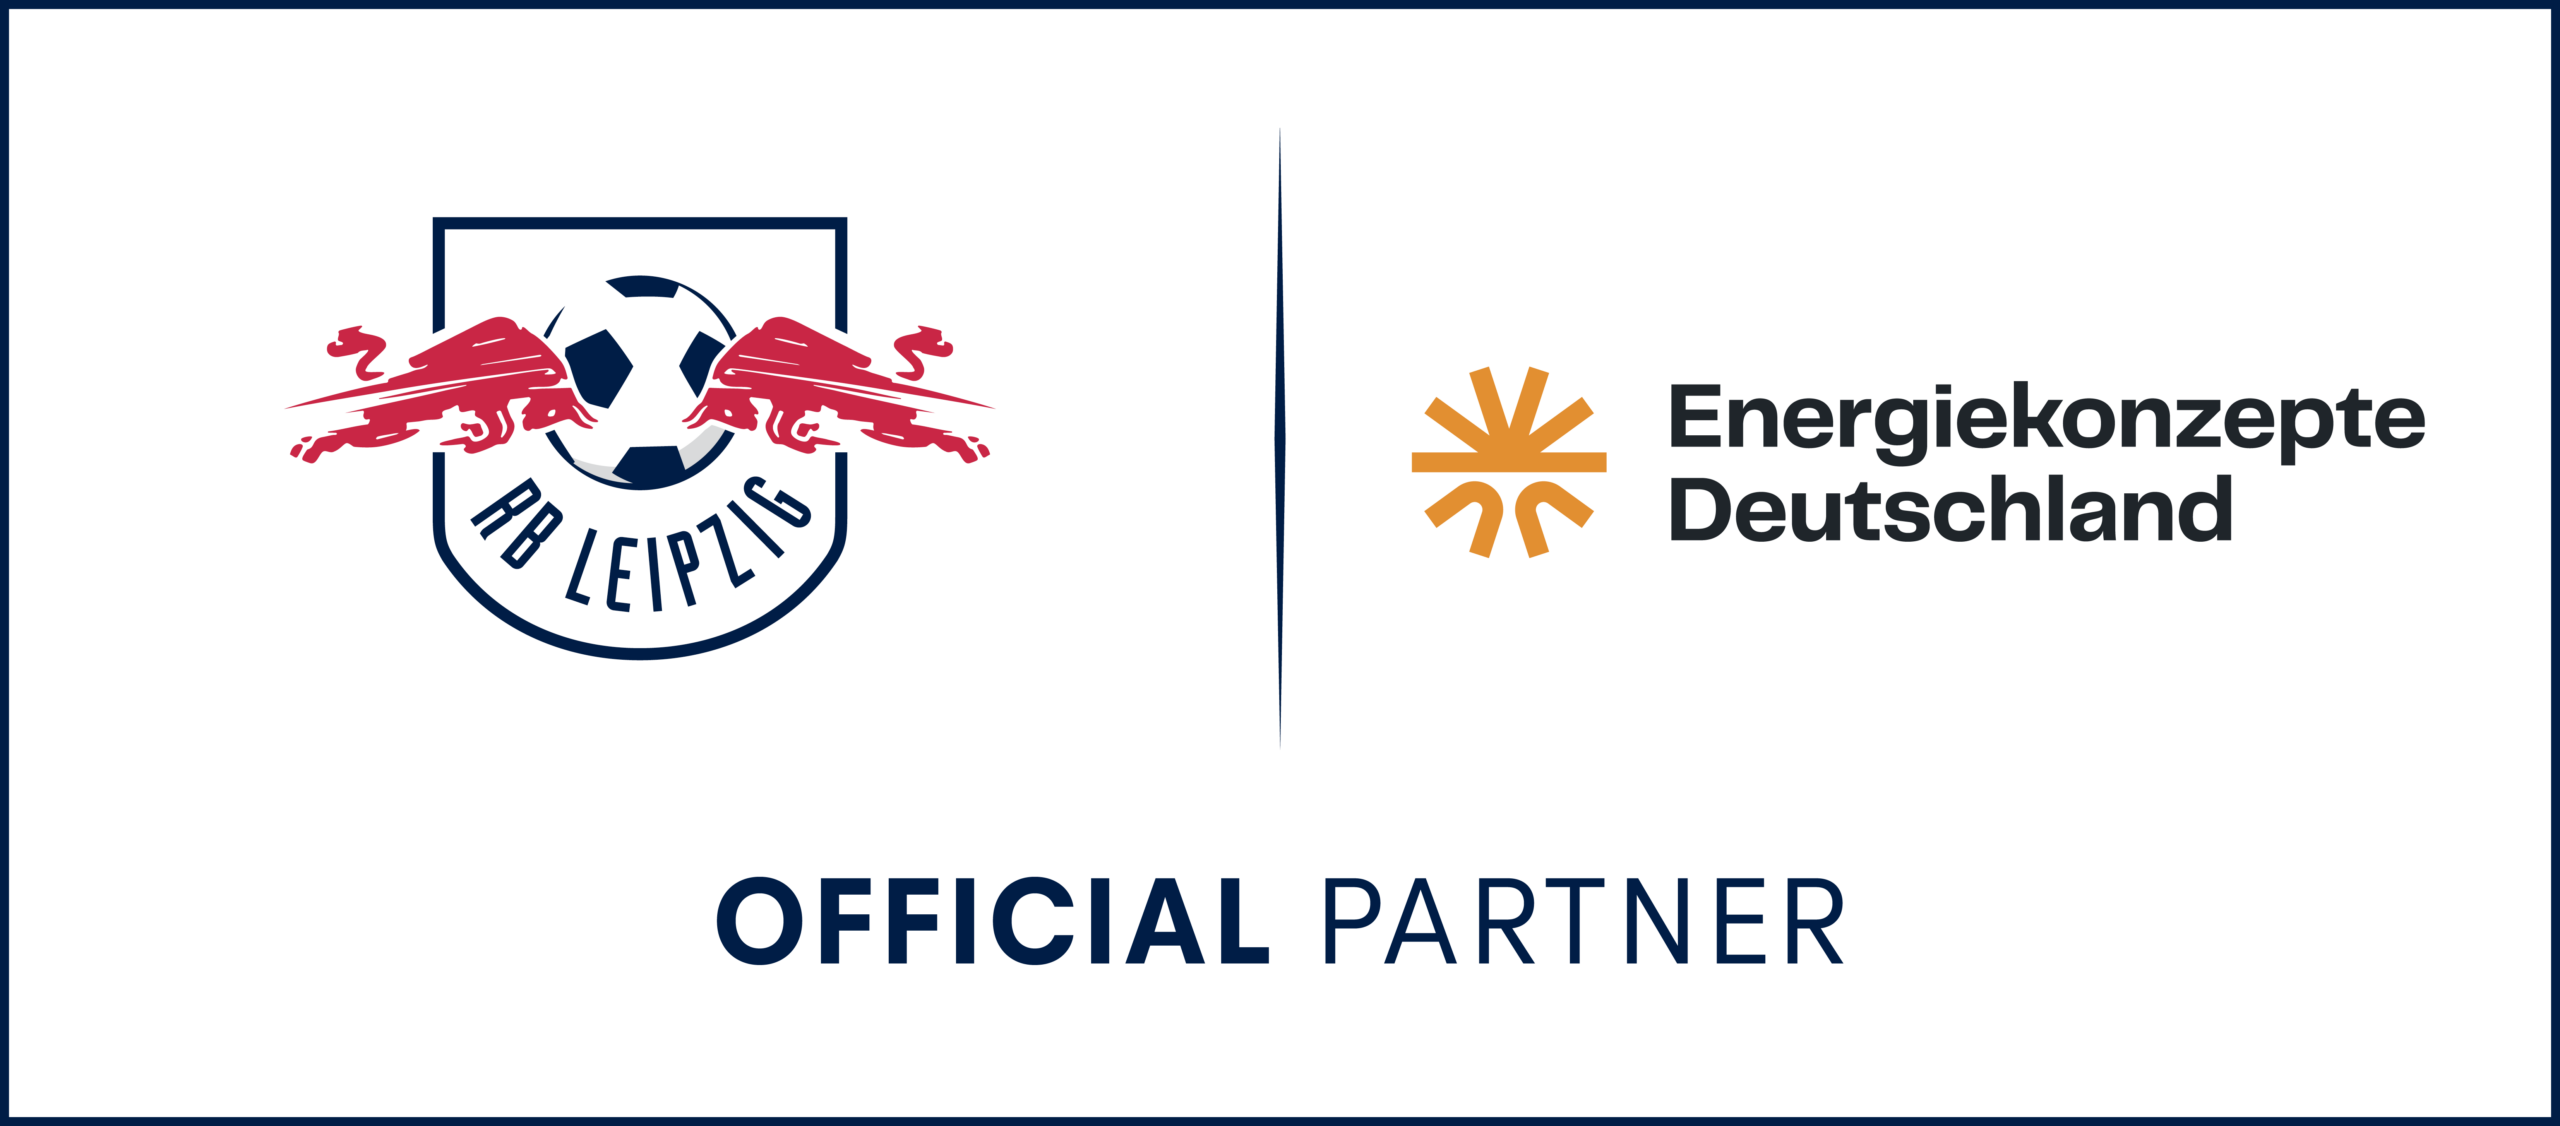 Energiekonzepte Deutschland ist "Official Partner" von RB Leipzig